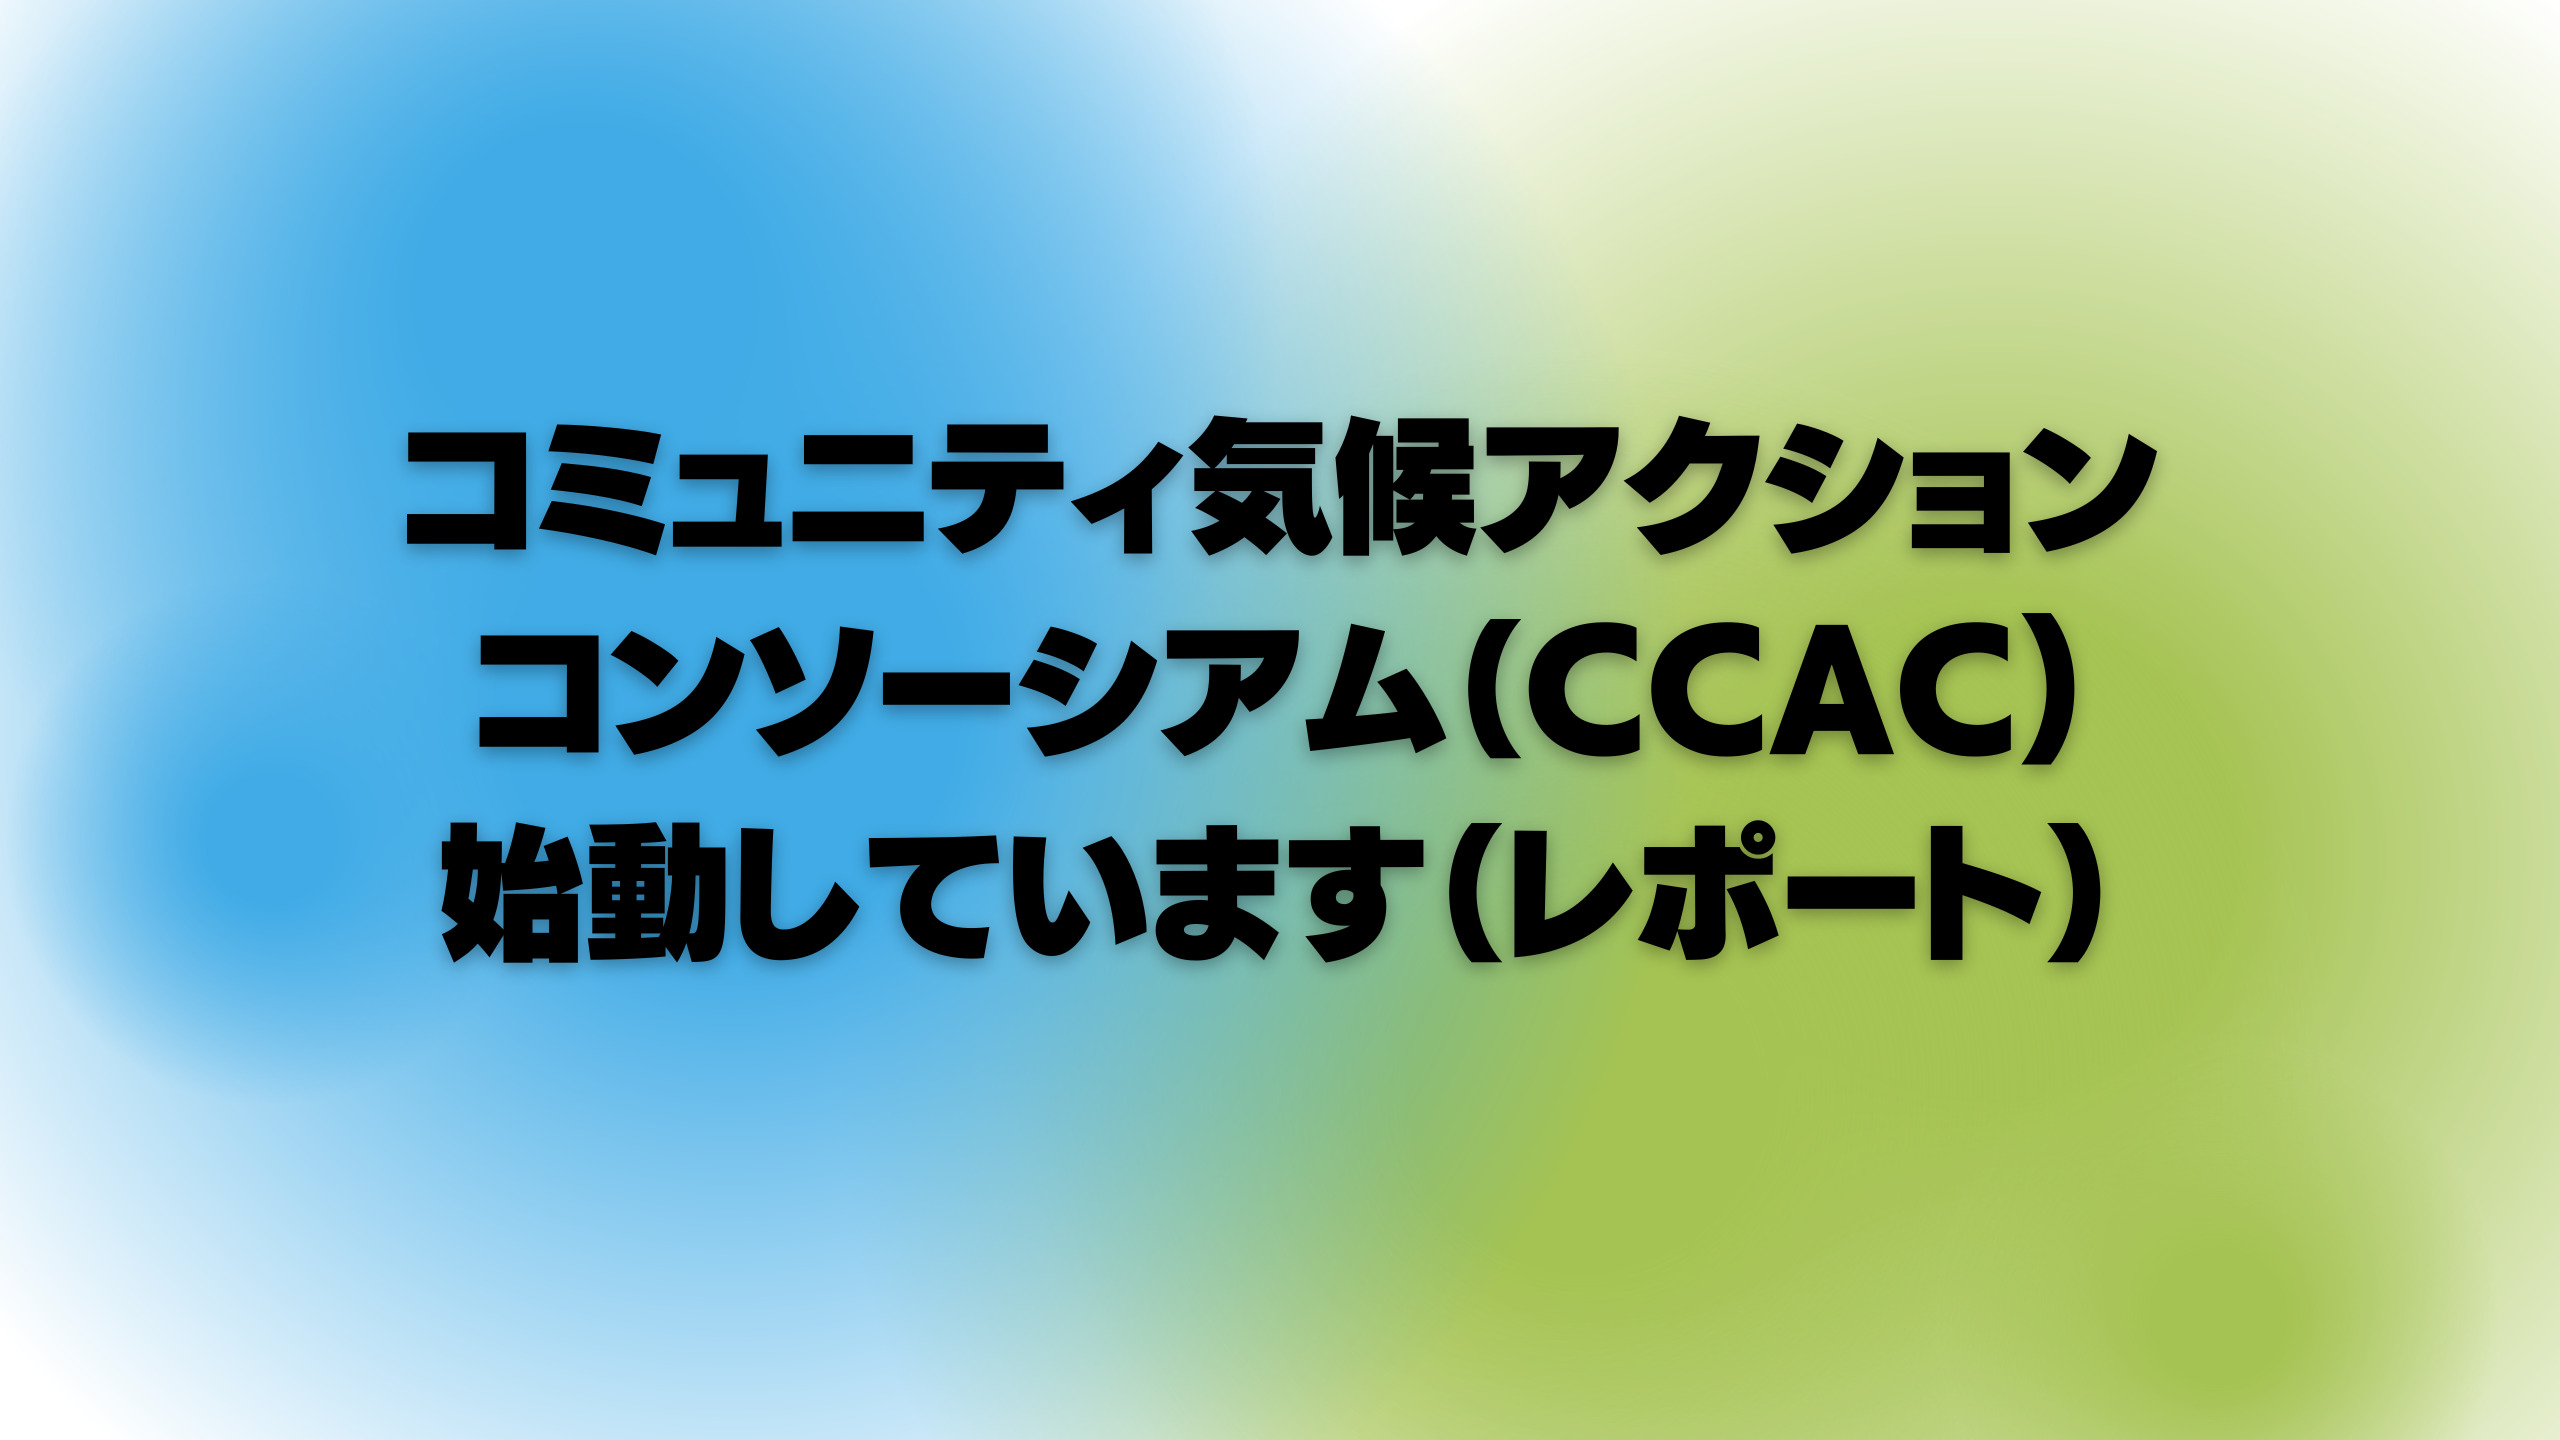 コミュニティ気候アクションコンソーシアム（CCAC)始動しています